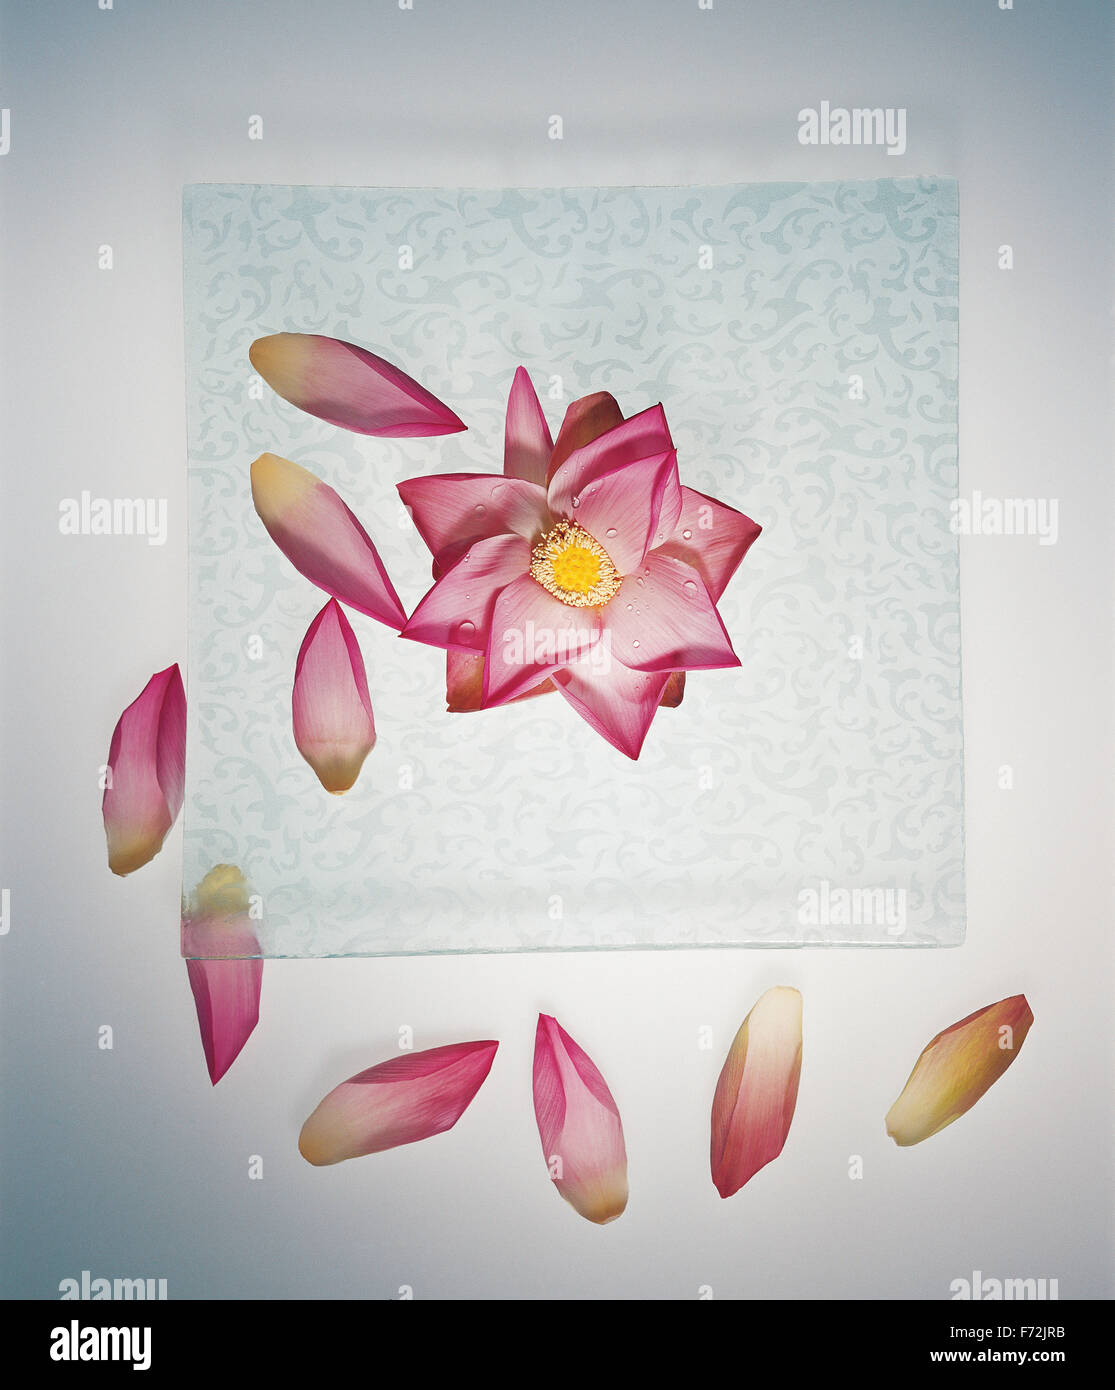 Pink lotus flower, lotus flower, Nelumbo nucifera, Indian lotus, sacred lotus, lotus Stock Photo